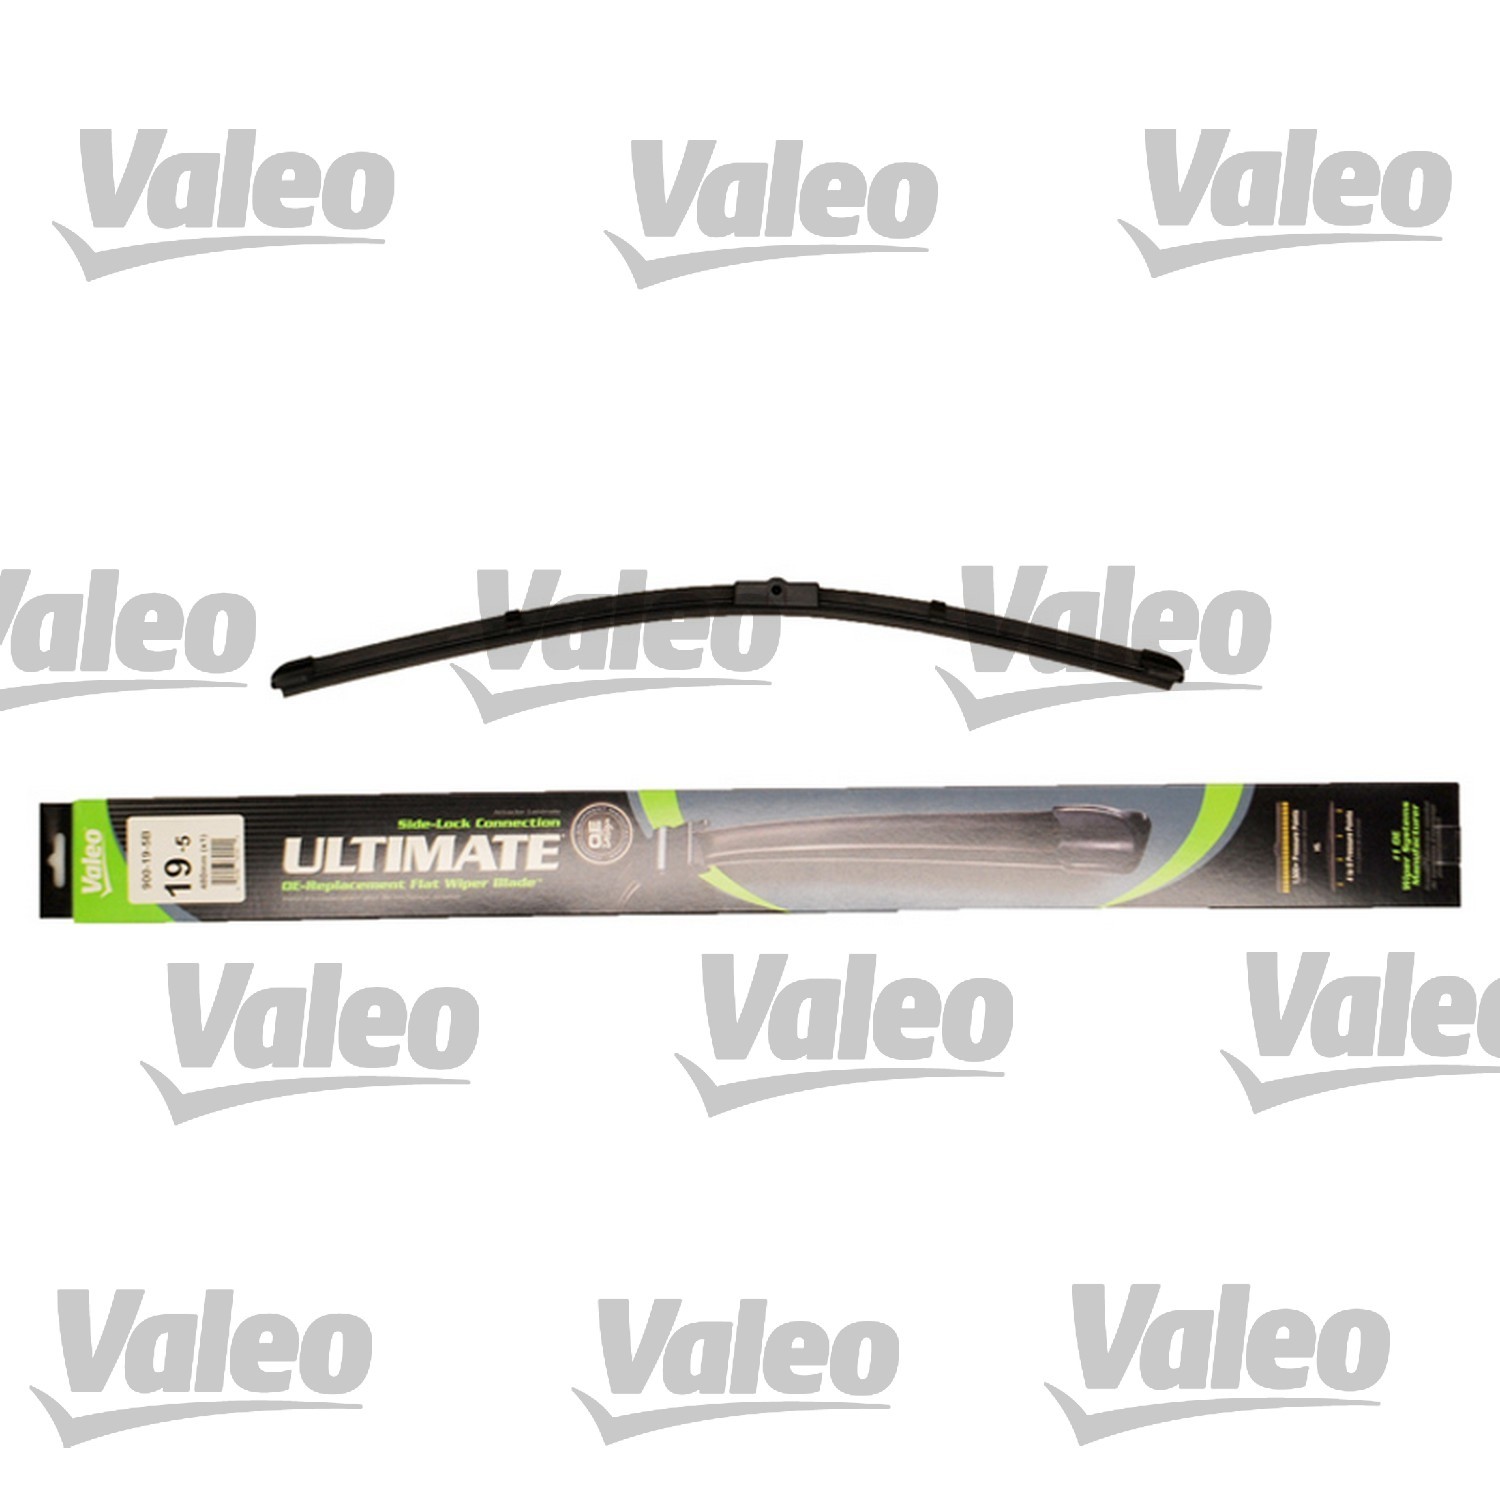 VALEO - Ultimate Wiper Blade Refill - VEO 900-19-5B